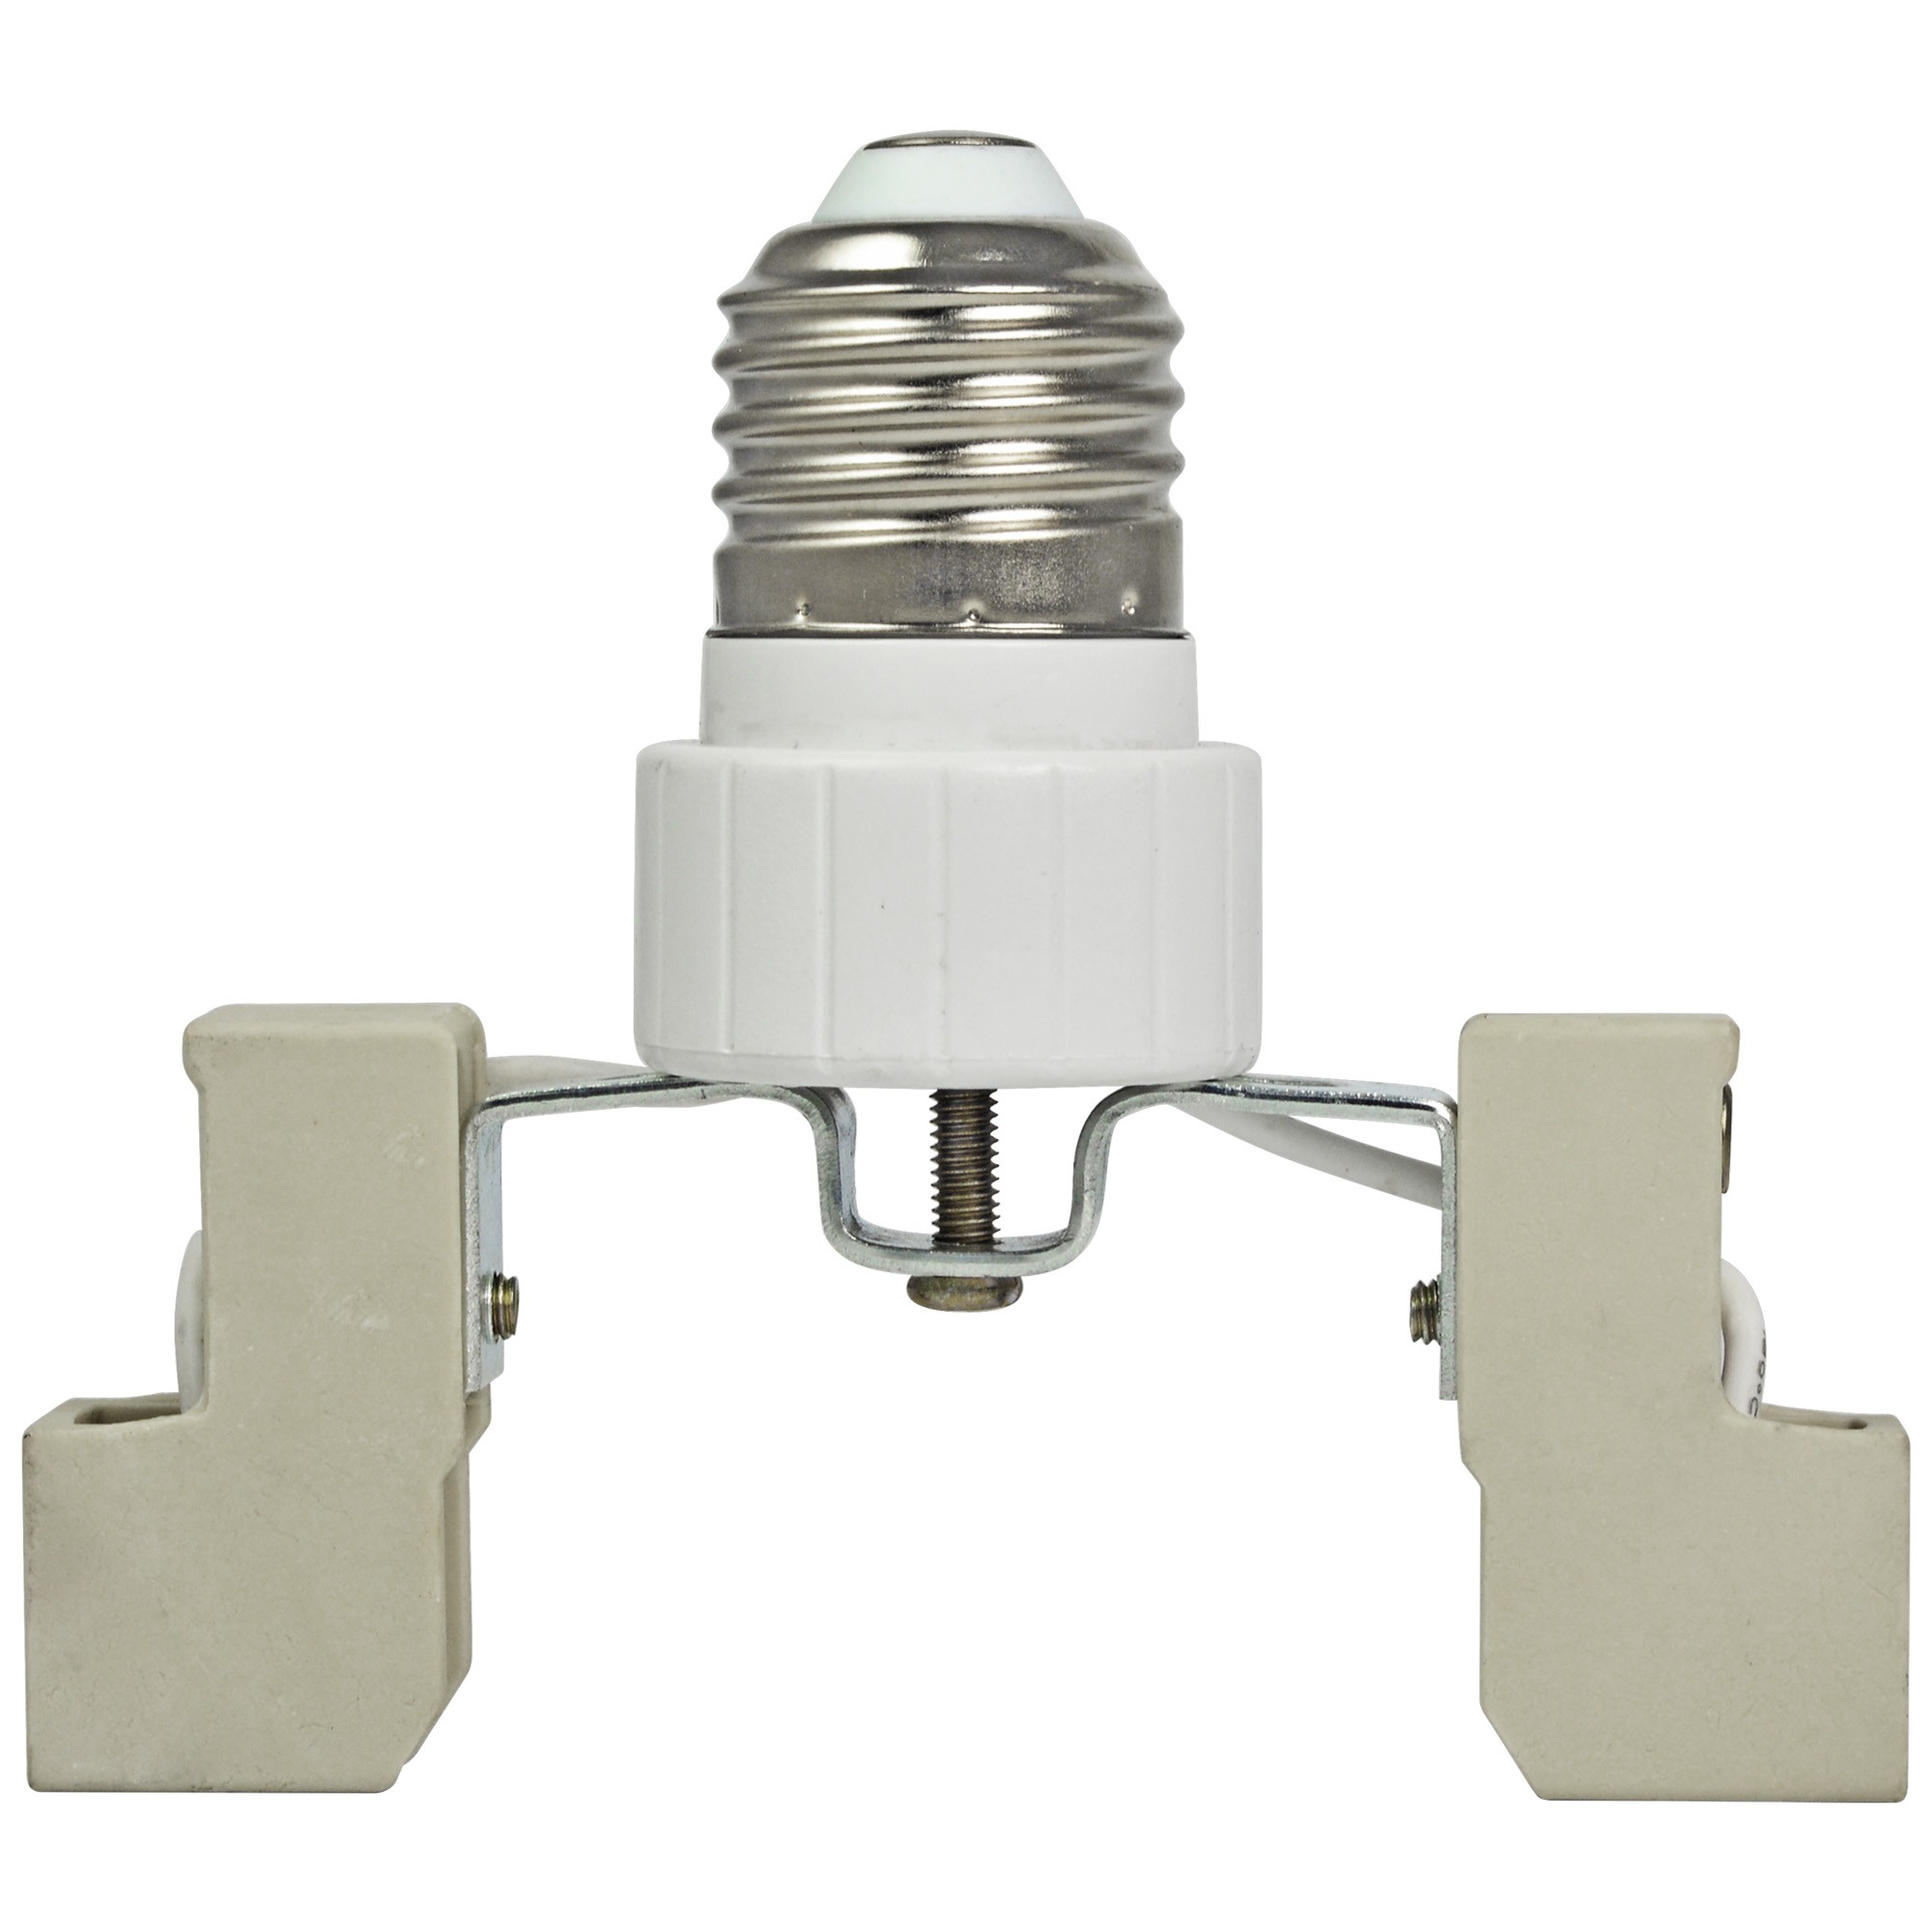 MengsLED – MENGS® E27 to R7S-78mm LED Light Lamp Bulb Adapter Converter